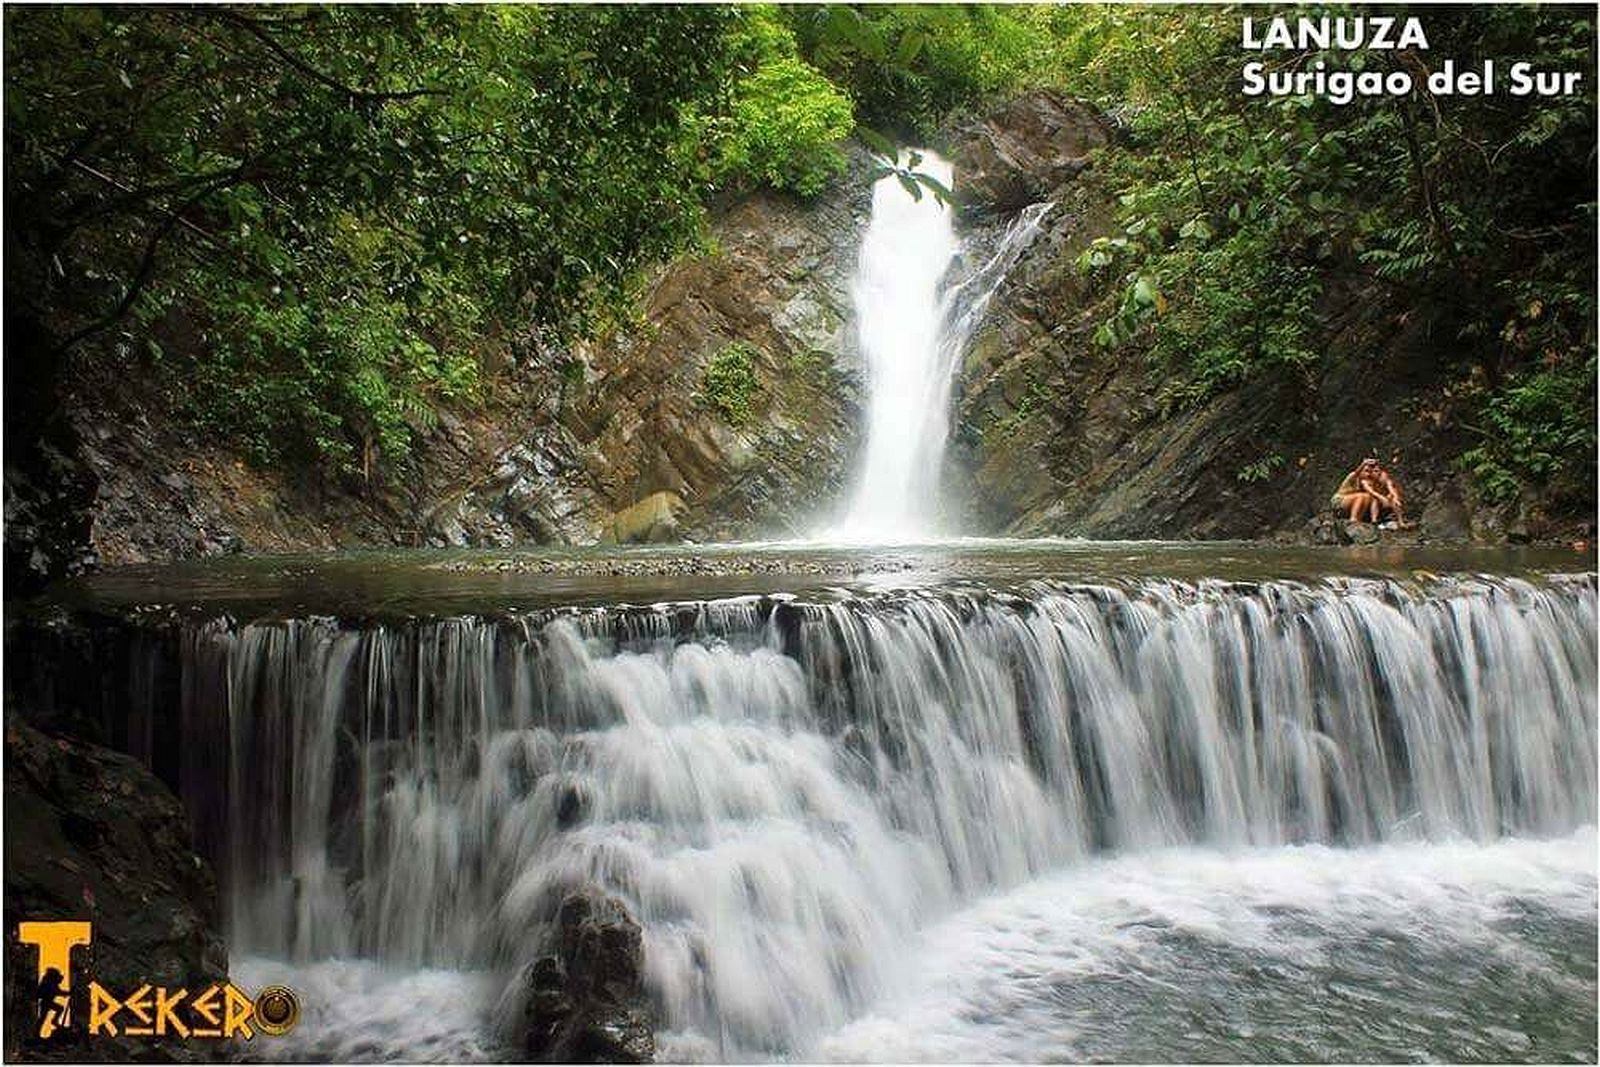 PHILIPPINEN REISEN - ORTE - MINDANAO - SURIGAO DEL SUR - Touristische Ortsbeschreibung für Lanuza